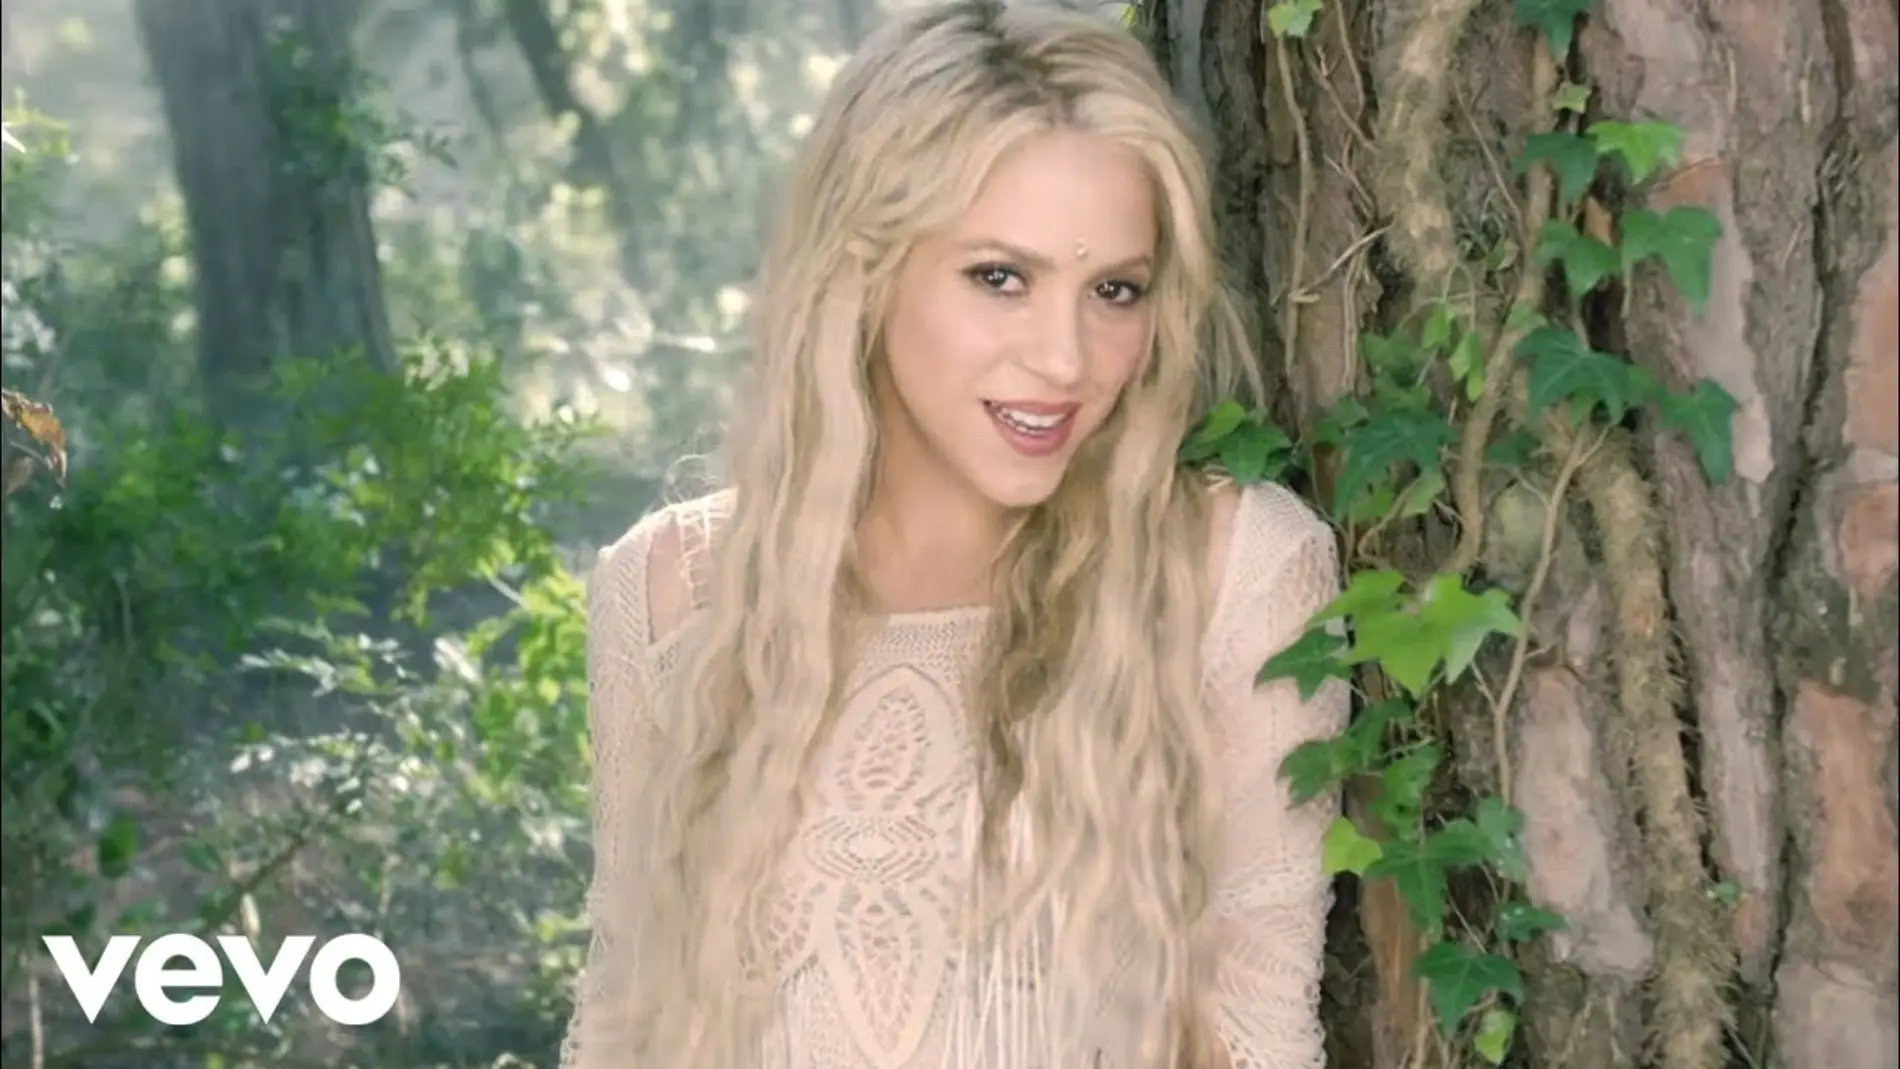 La portada de 'Me enamoré' de Shakira antes de pasarle el filtro robot.